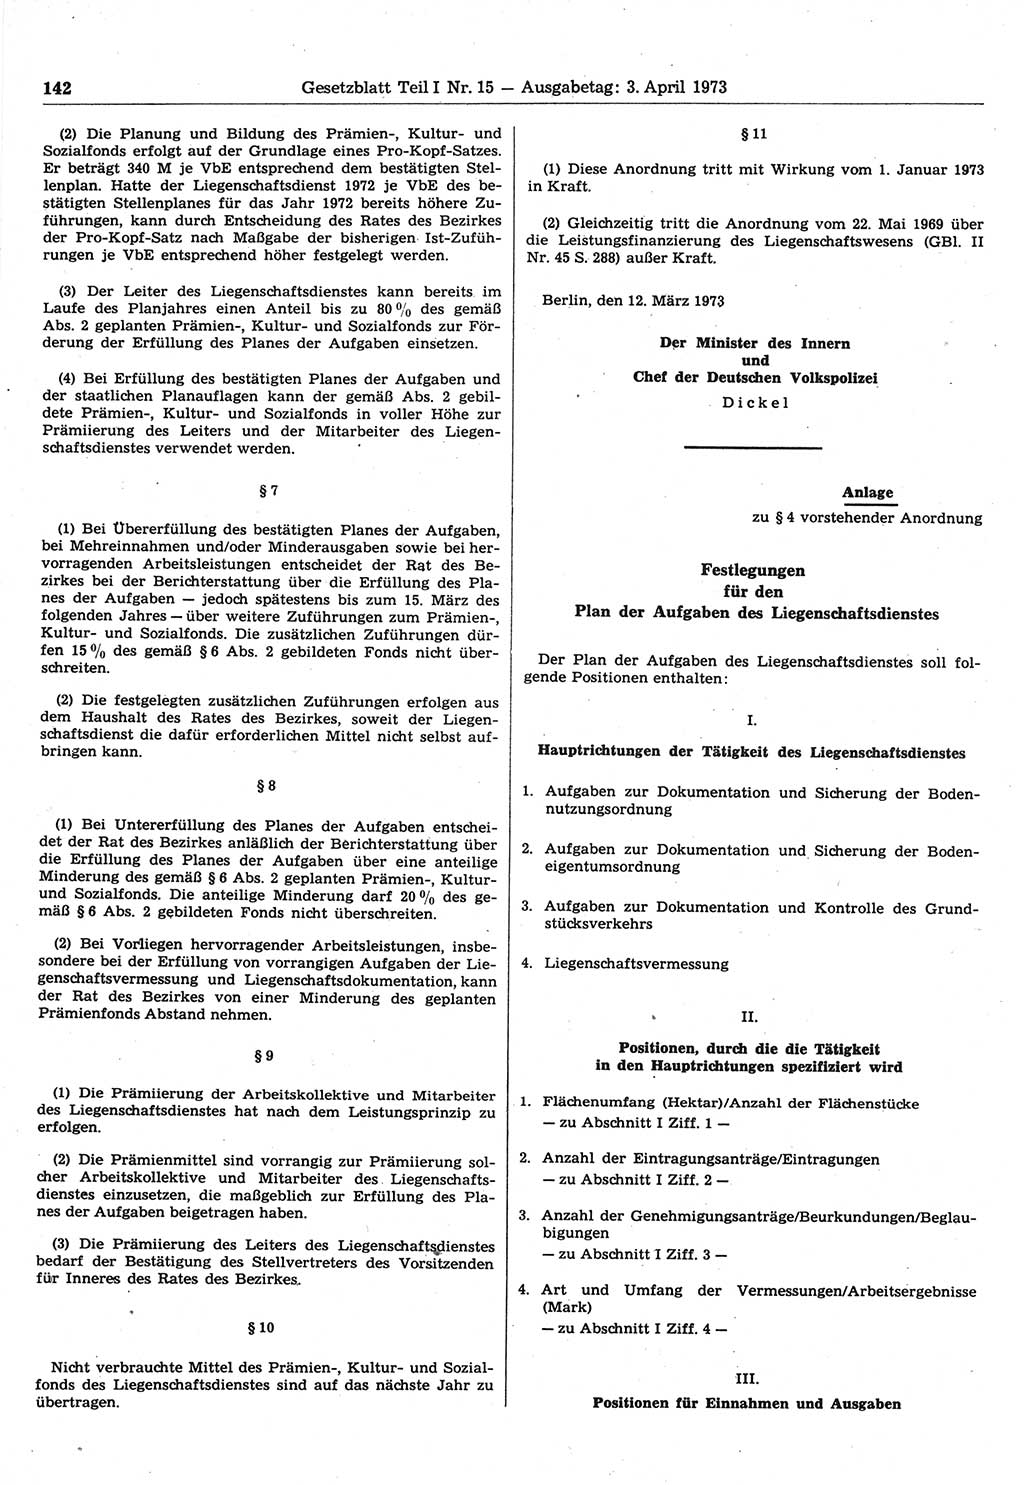 Gesetzblatt (GBl.) der Deutschen Demokratischen Republik (DDR) Teil Ⅰ 1973, Seite 142 (GBl. DDR Ⅰ 1973, S. 142)